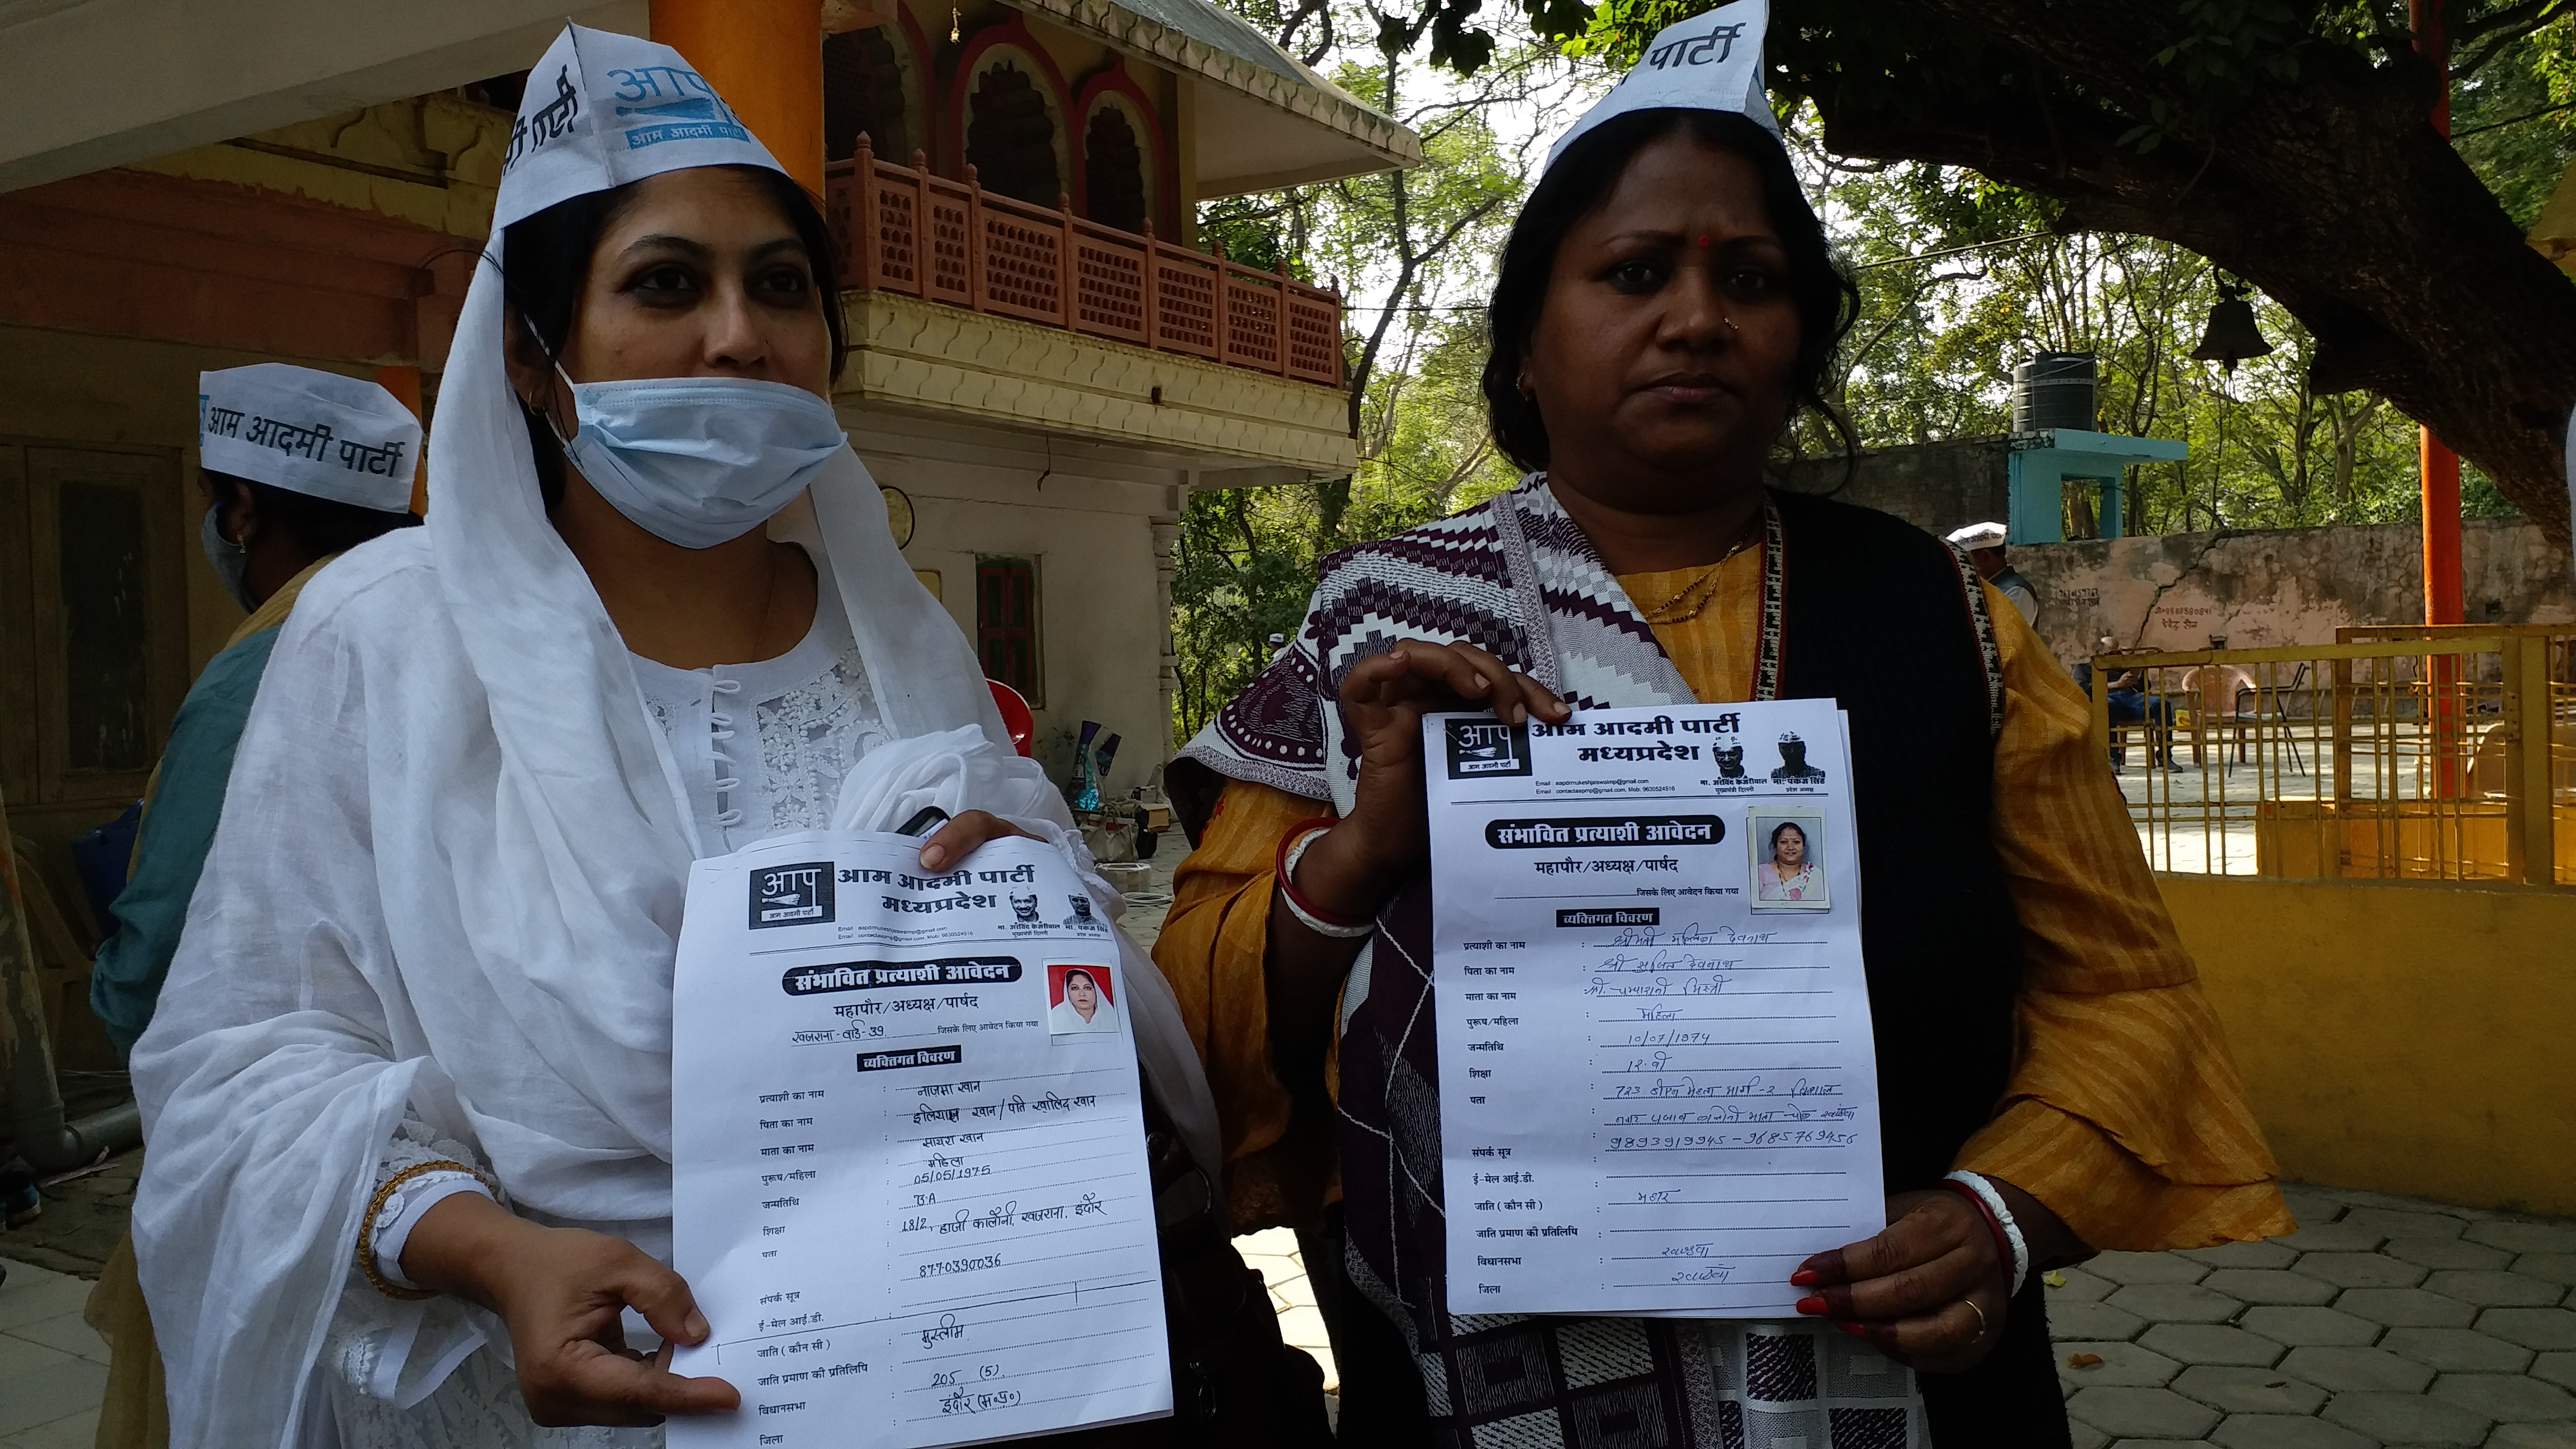 مدھیہ پردیش: عآپ پارٹی میونسپل کارپوریشن کا الیکشن لڑے گی